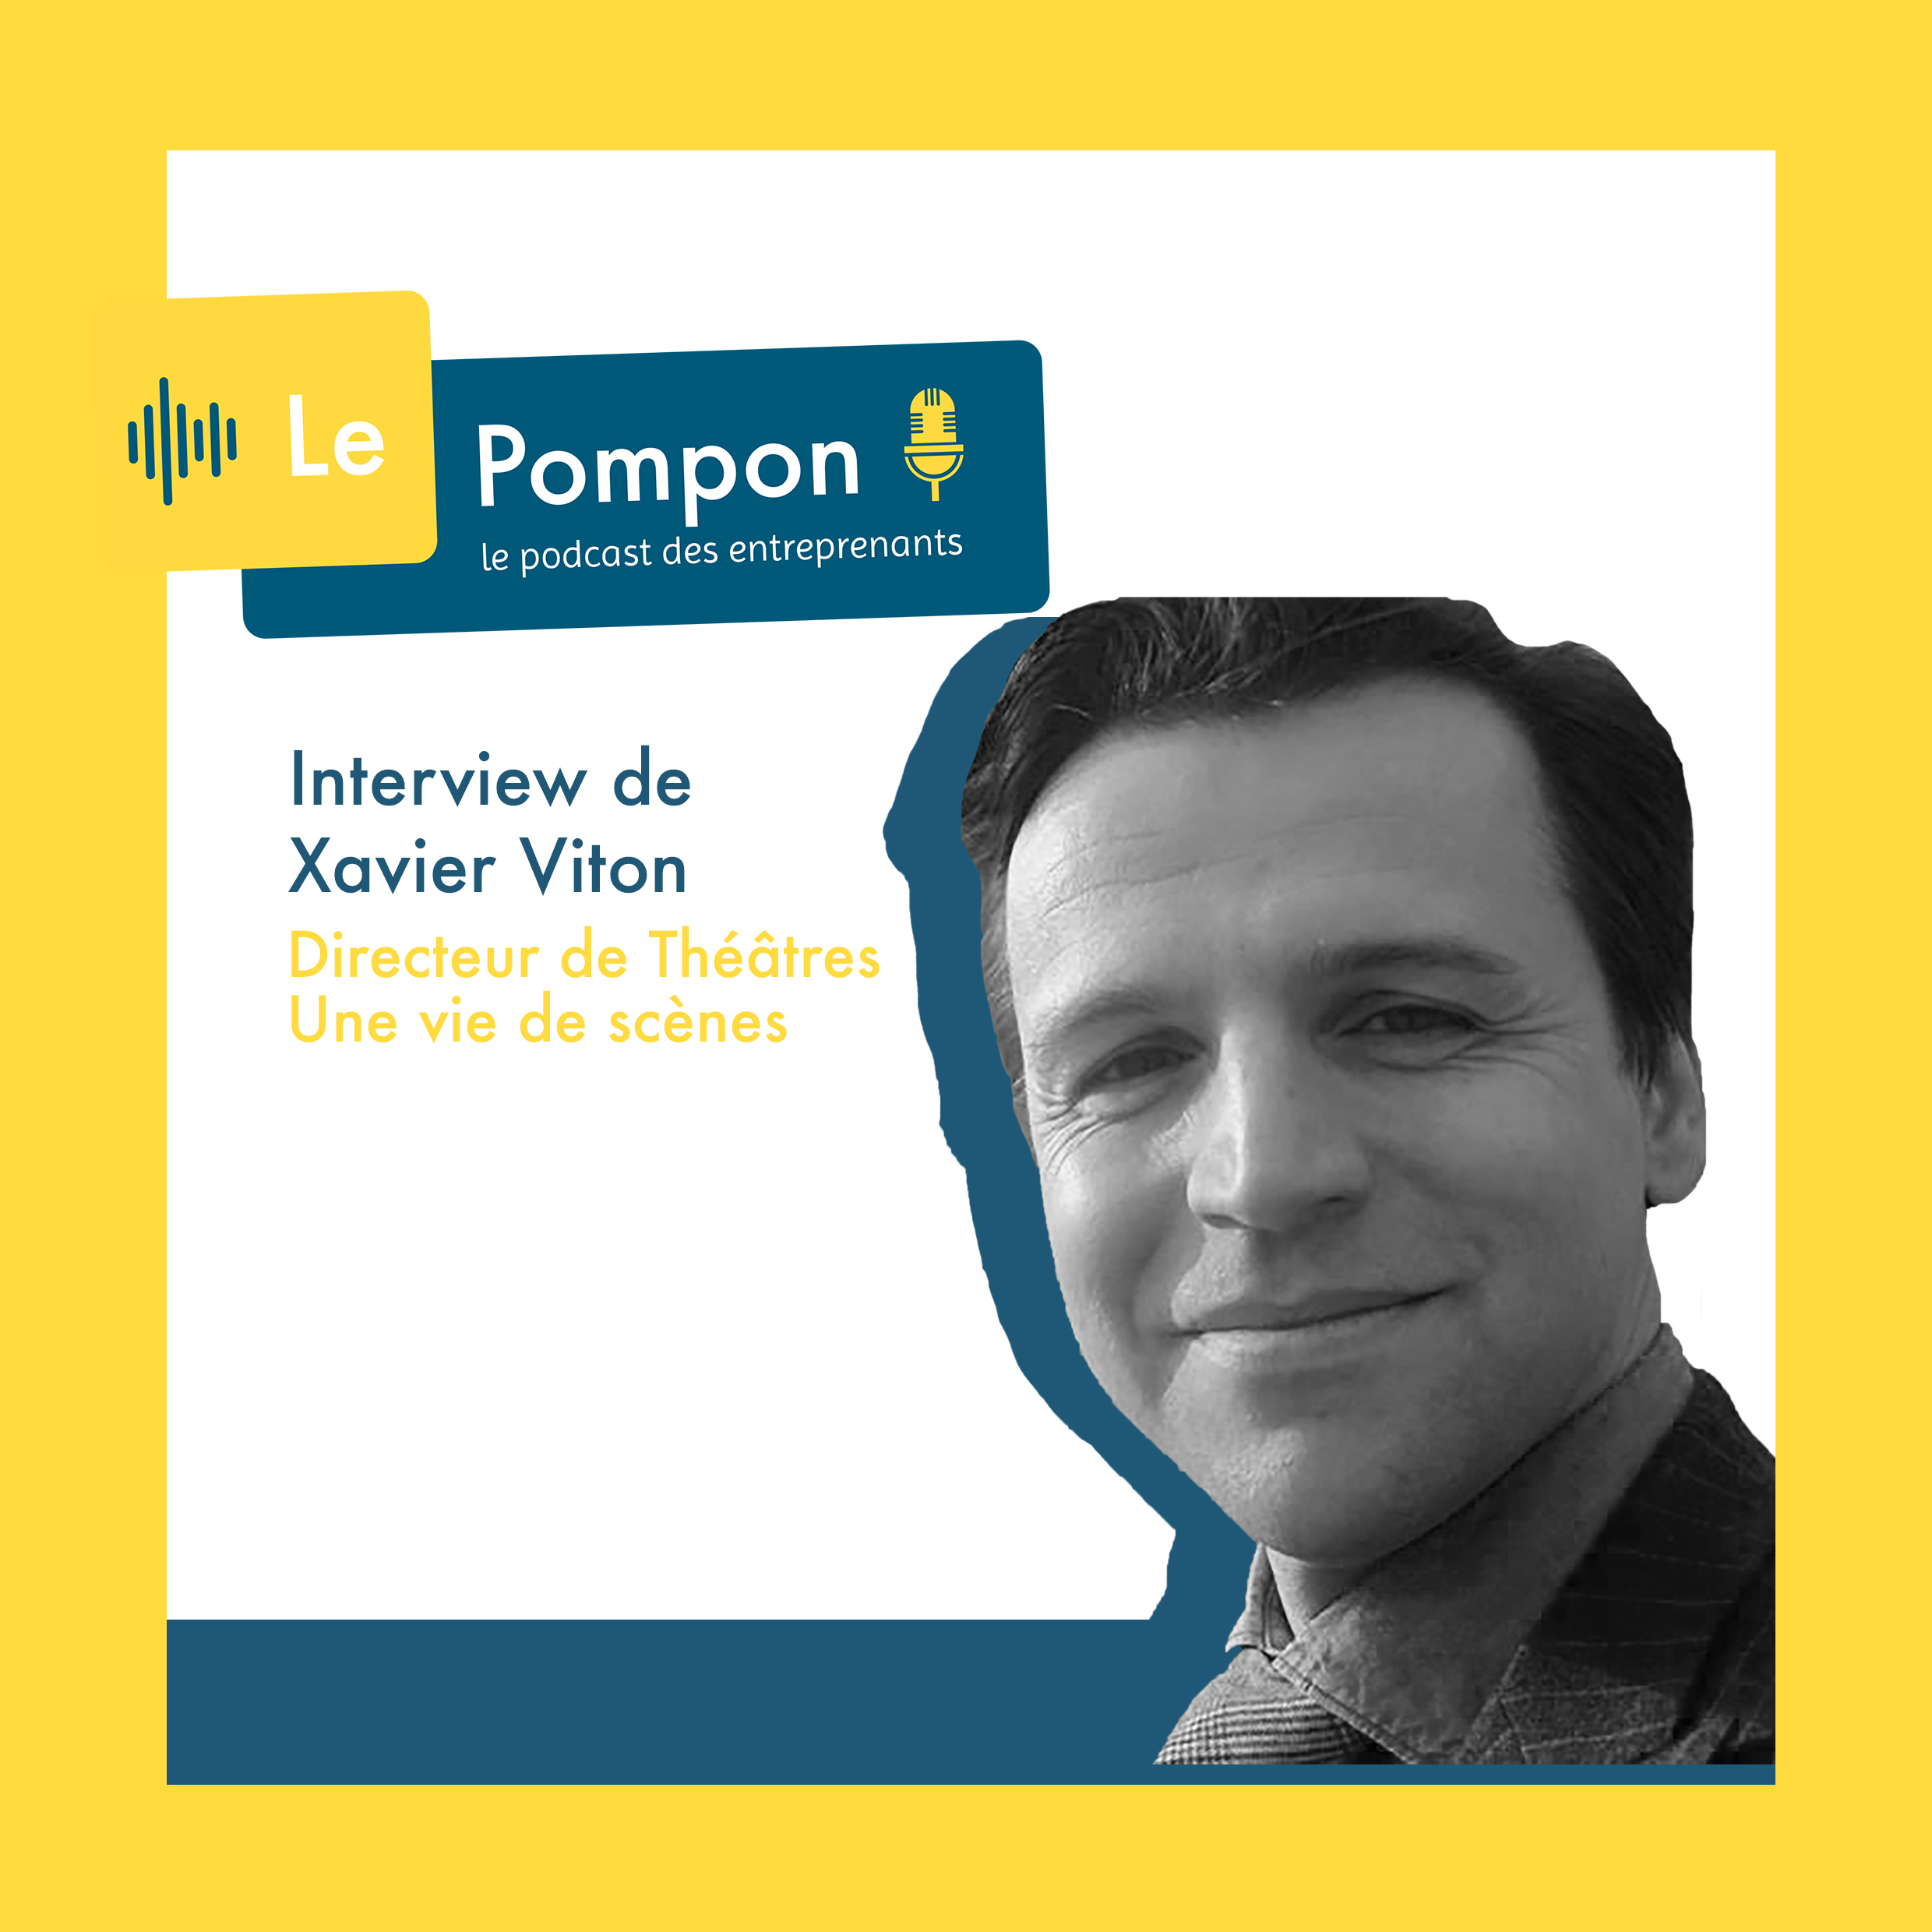 Illustration de l'épisode 36 du Podcast Le Pompon : Xavier Viton, Directeur de Théâtres